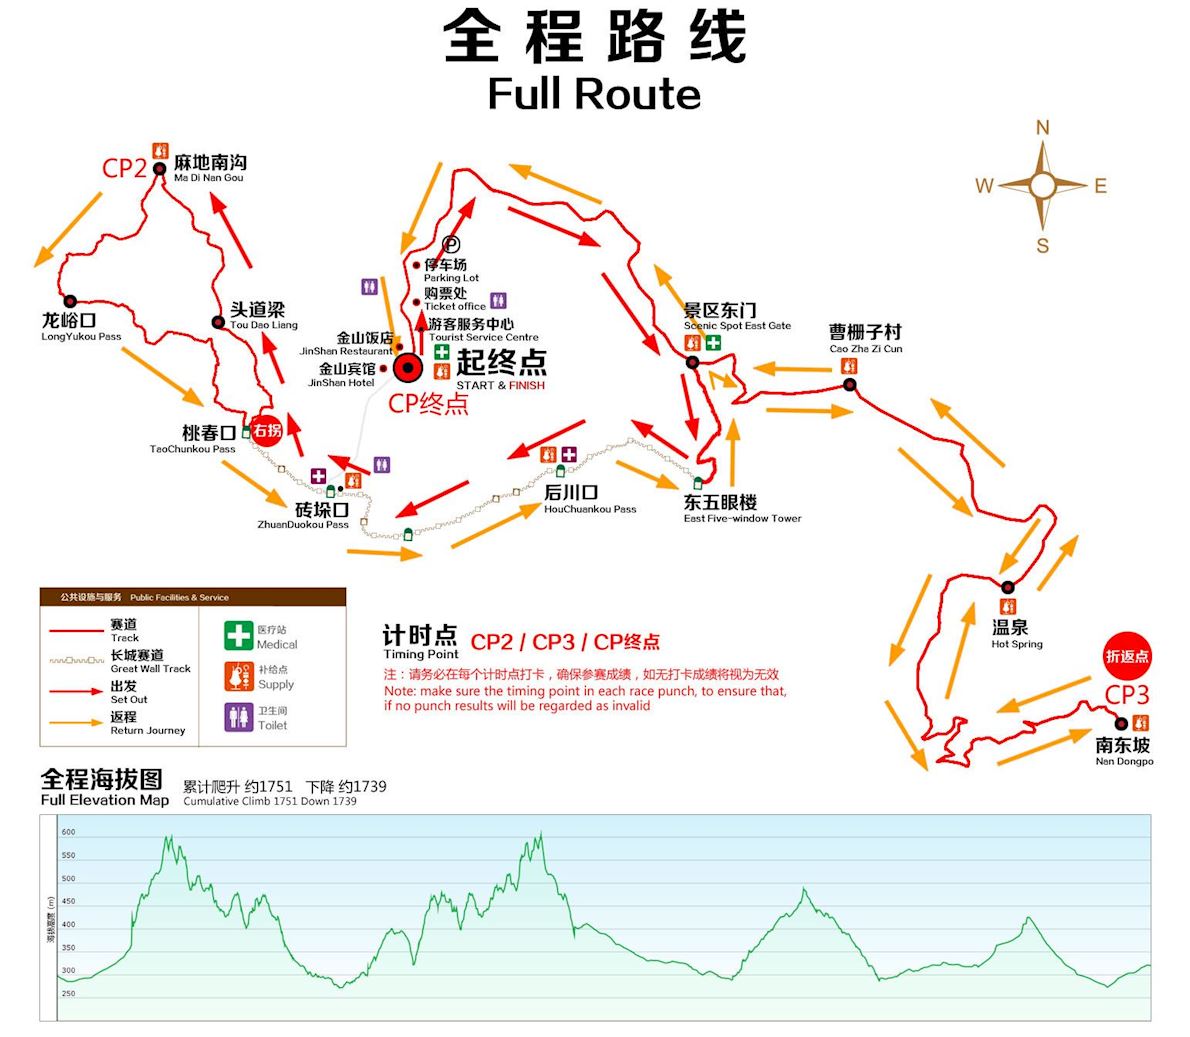 Jinshanling Great Wall Marathon 路线图